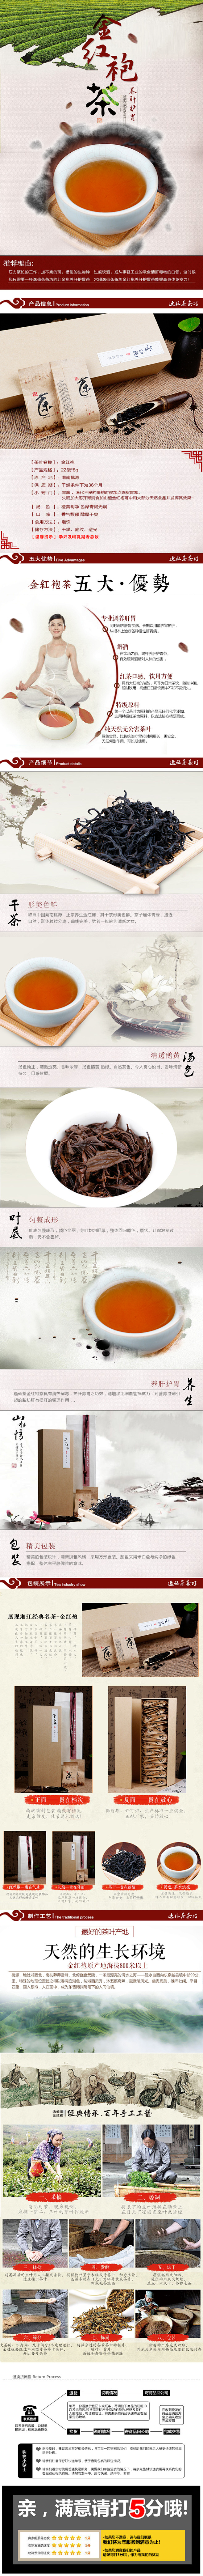 【20150323】【详情】茶叶-详情-...